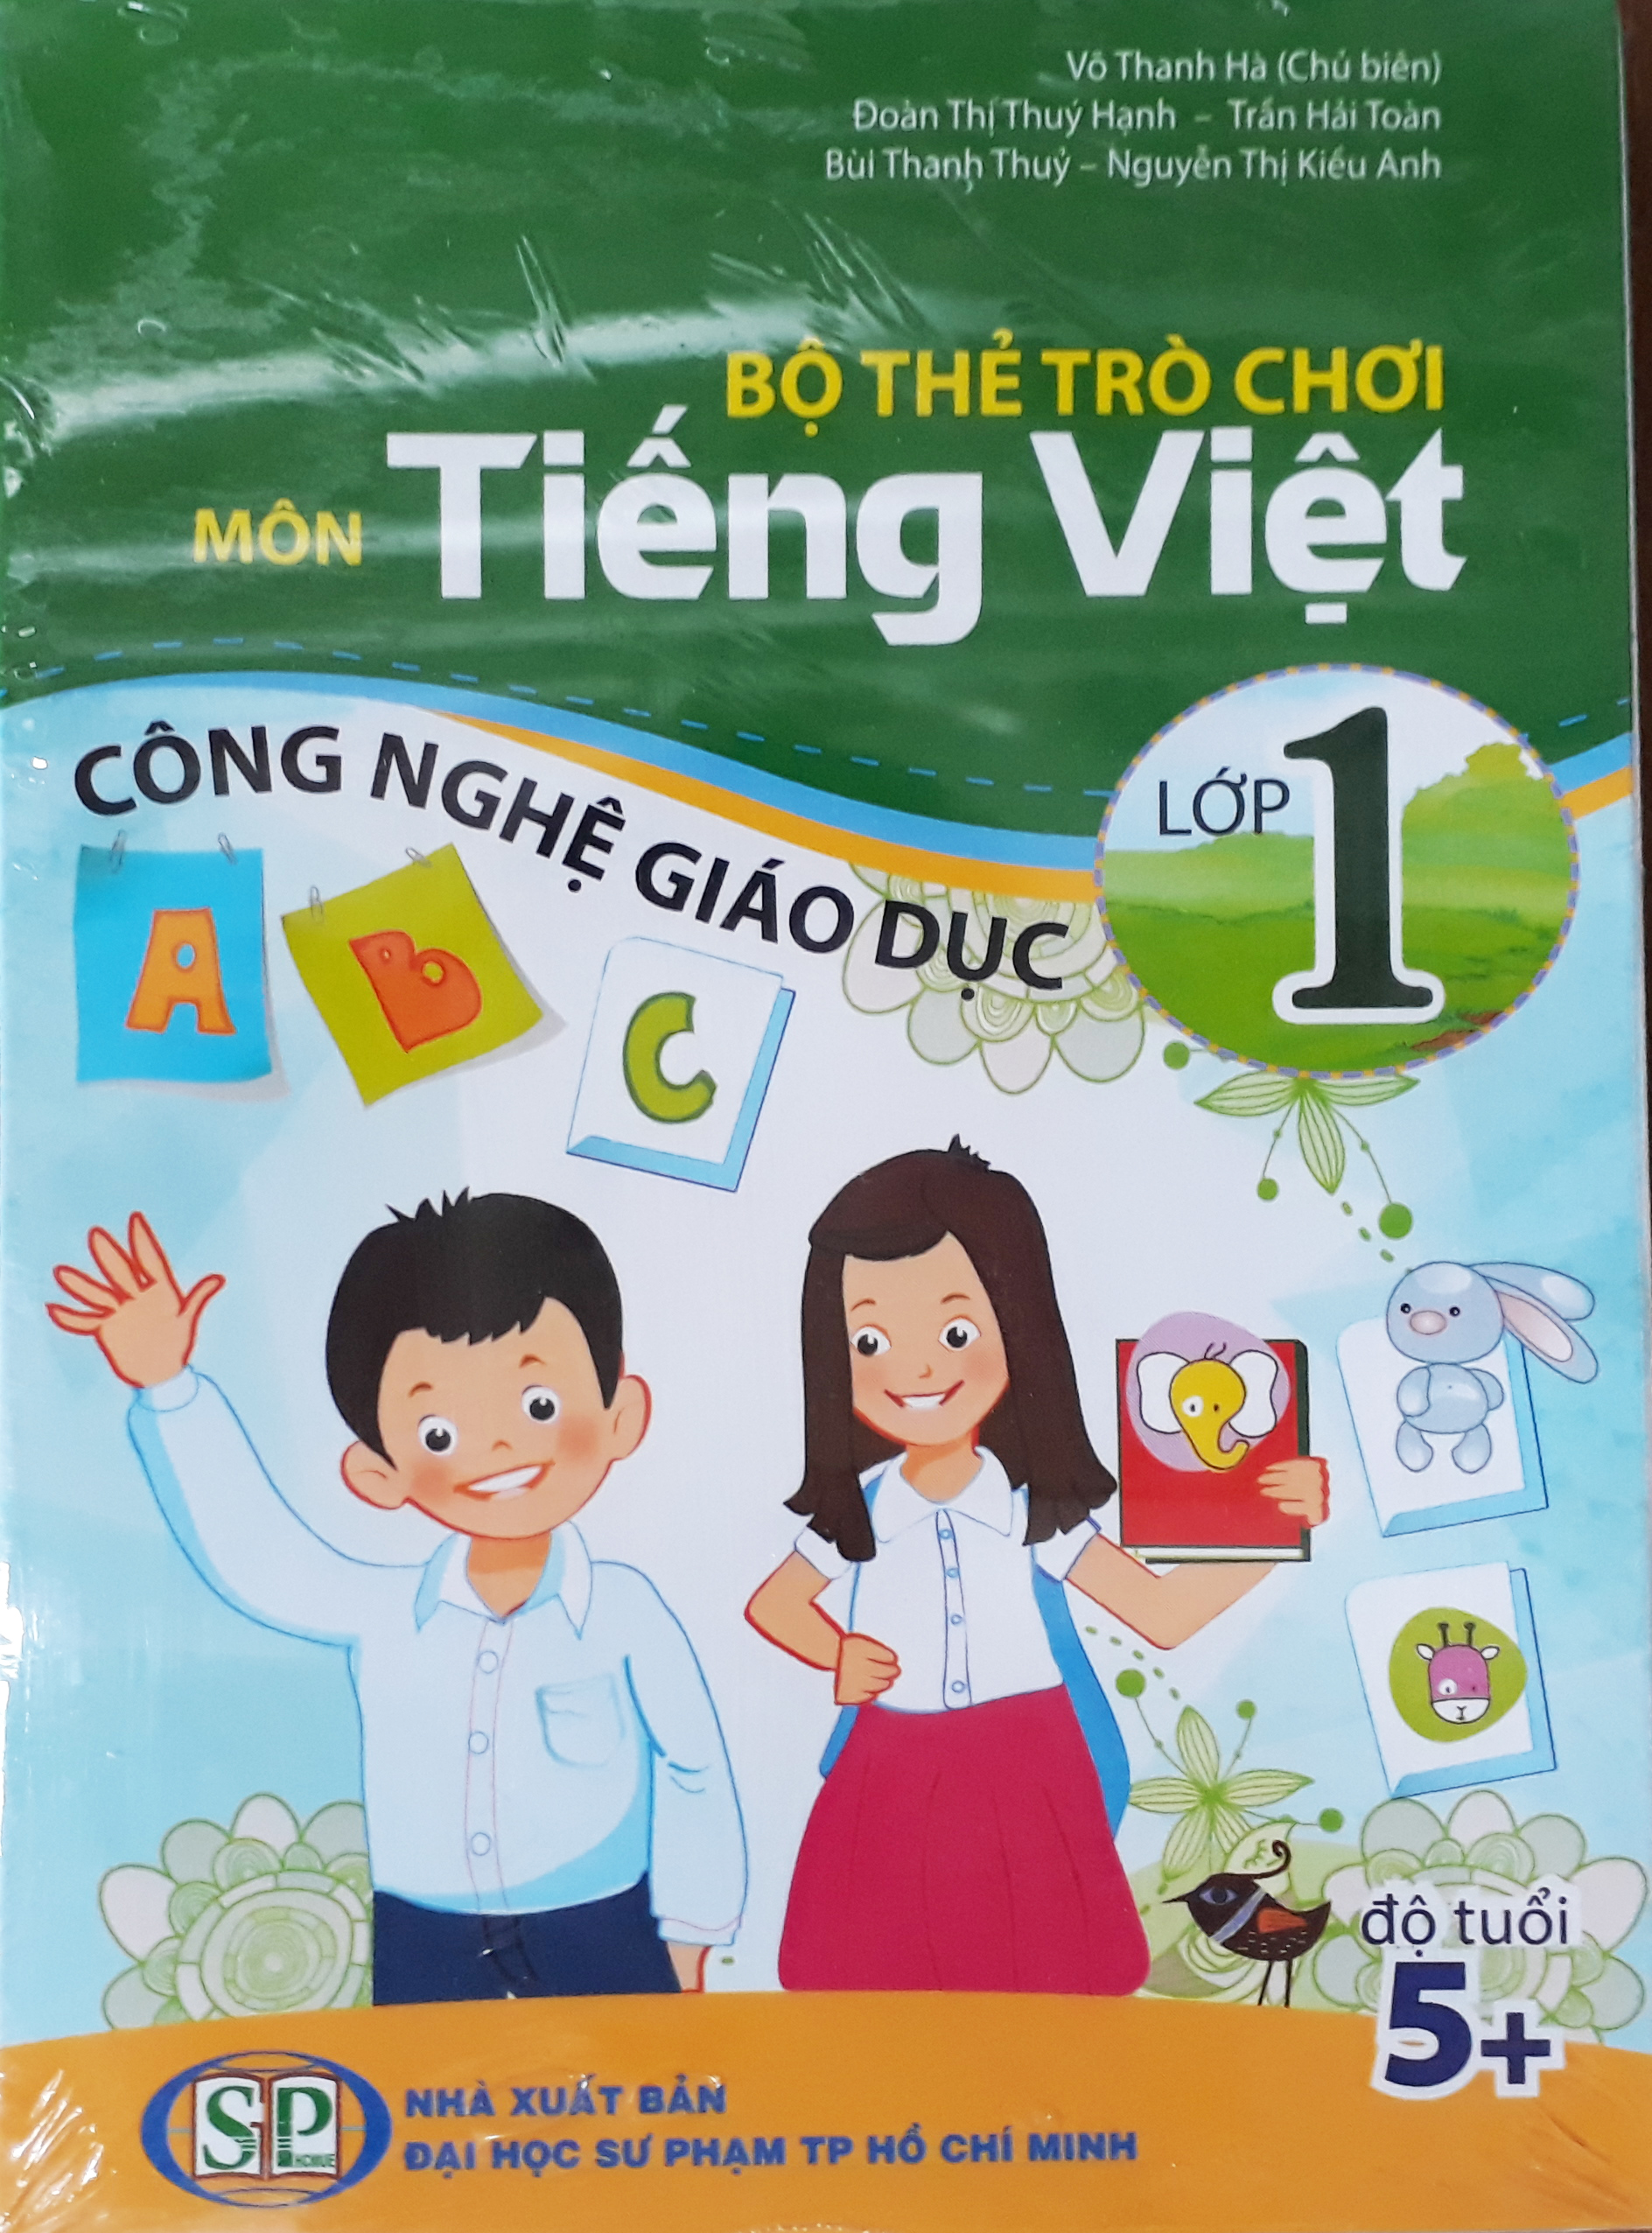 Bộ thẻ trò chơi môn Tiếng Việt lớp 1 Công nghệ giáo dục